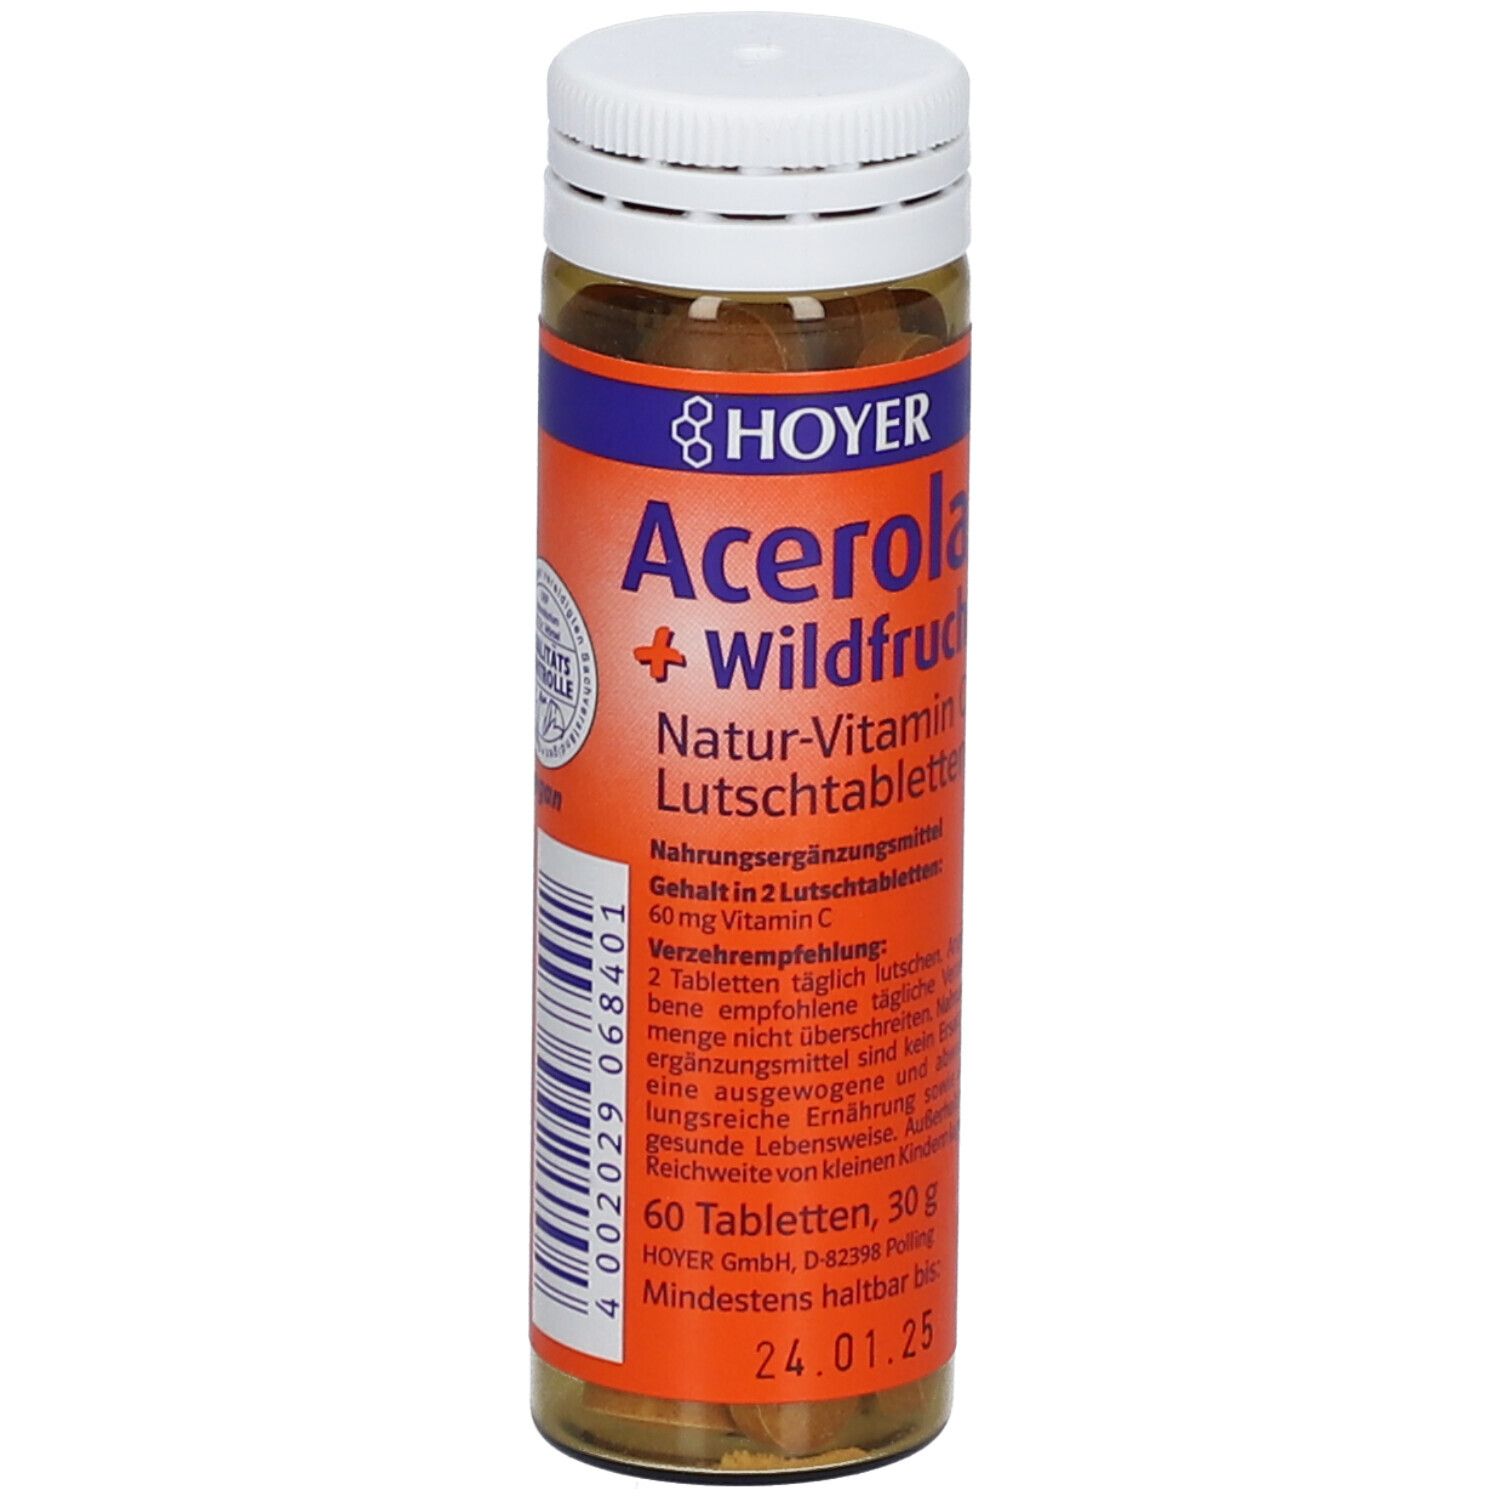 Acerola und Wildfrucht Vitamin C Lutschtabletten